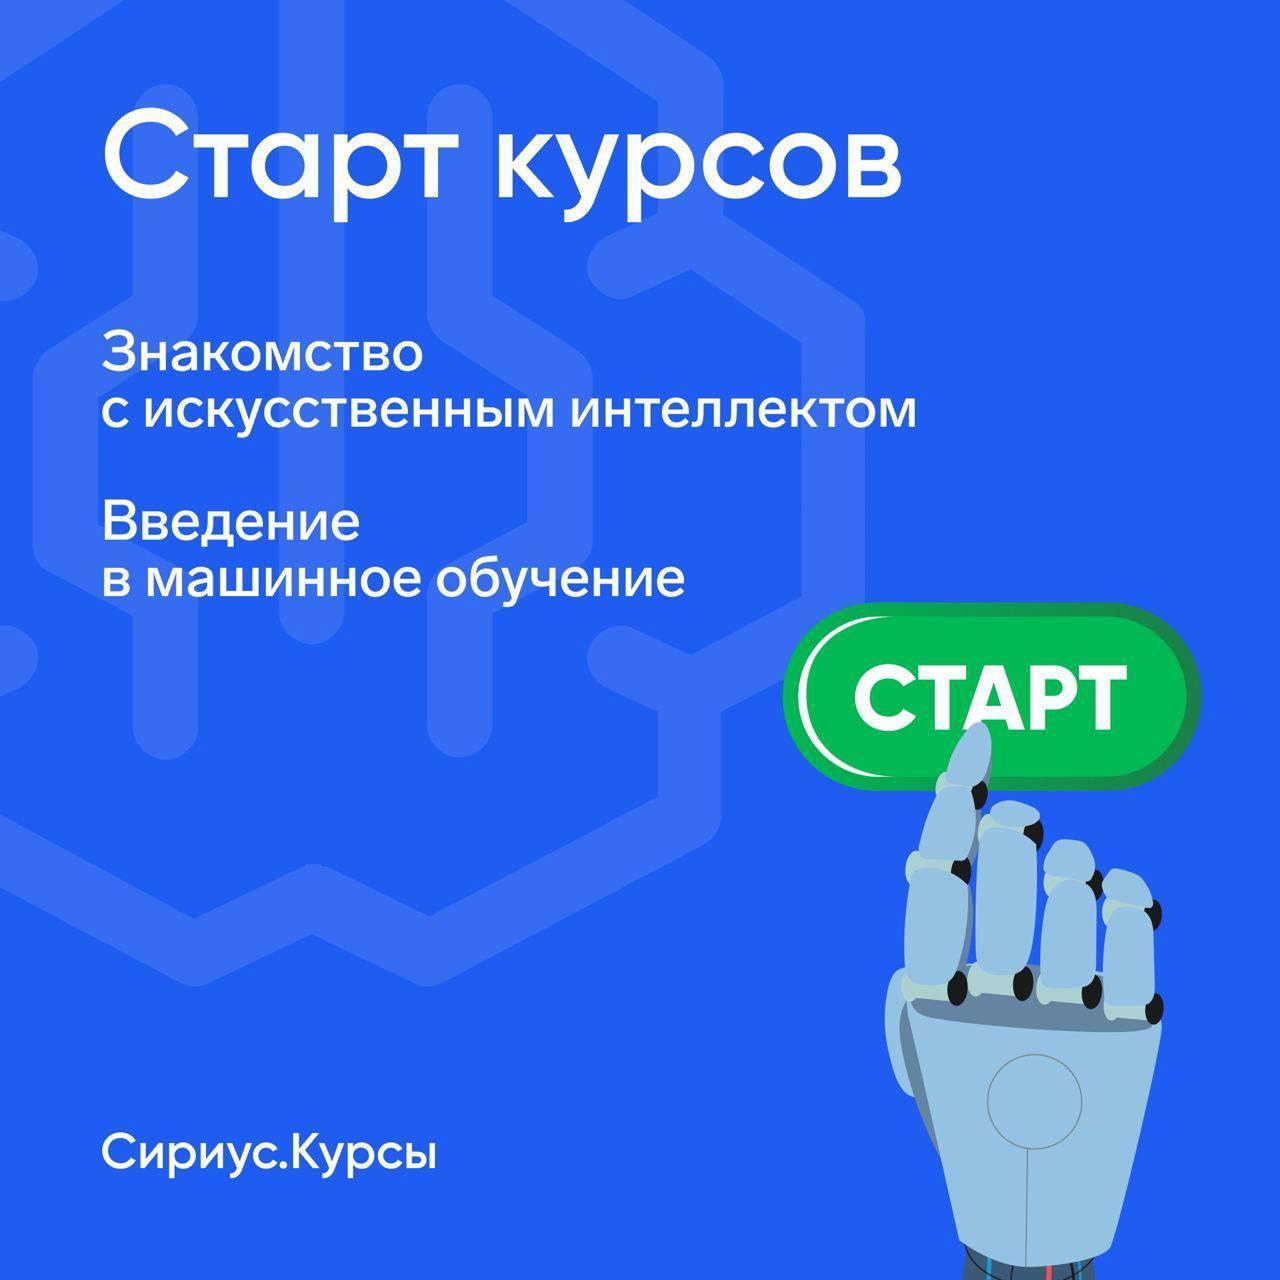 Бесплатные курсы по искусственному интеллекту для школьников из Калужской области.